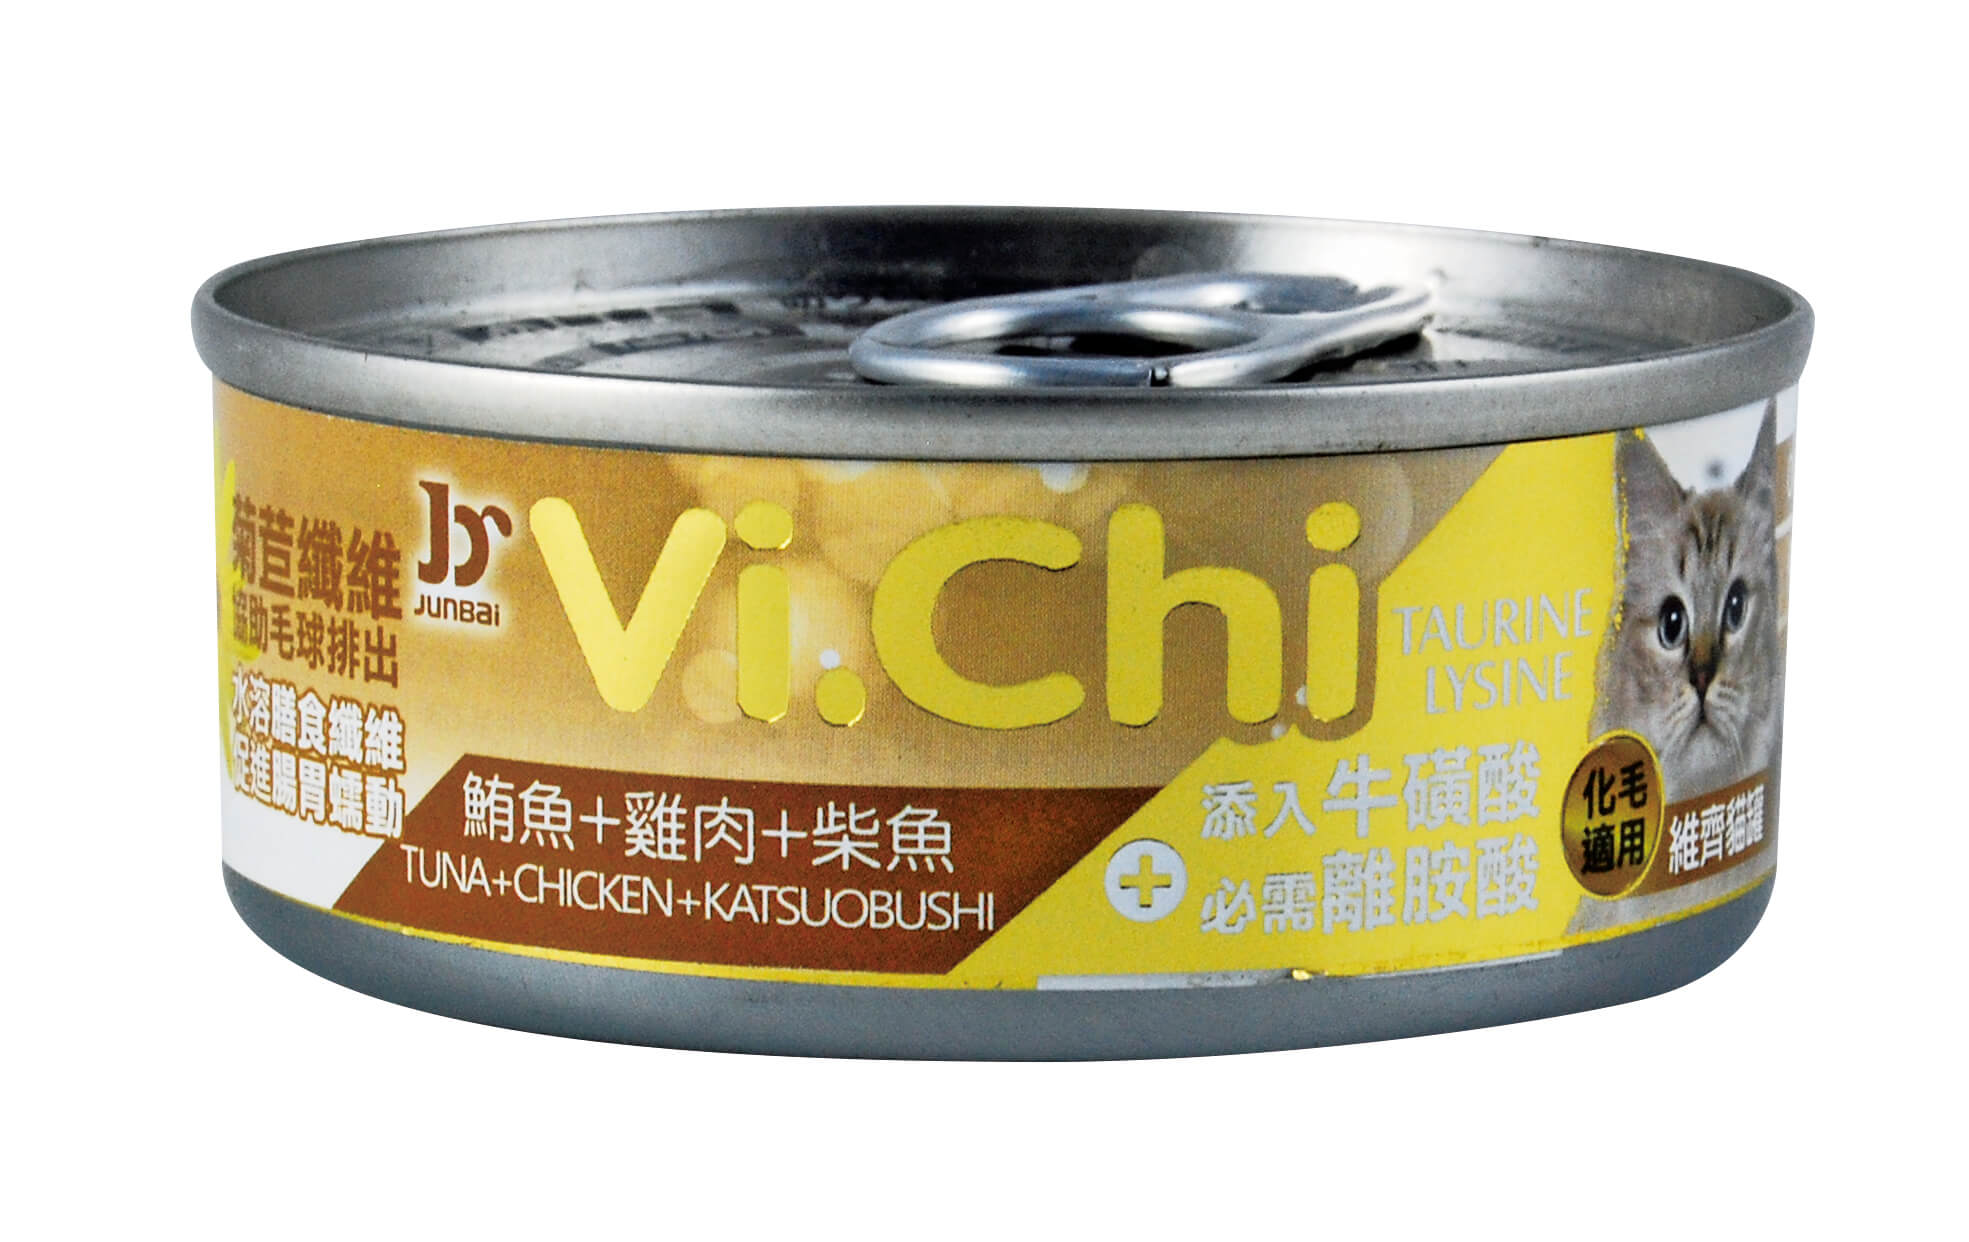 維齊貓罐-鮪魚+雞肉+柴魚
Vi.Chi cat can-tuna+chicken+katsuobusi